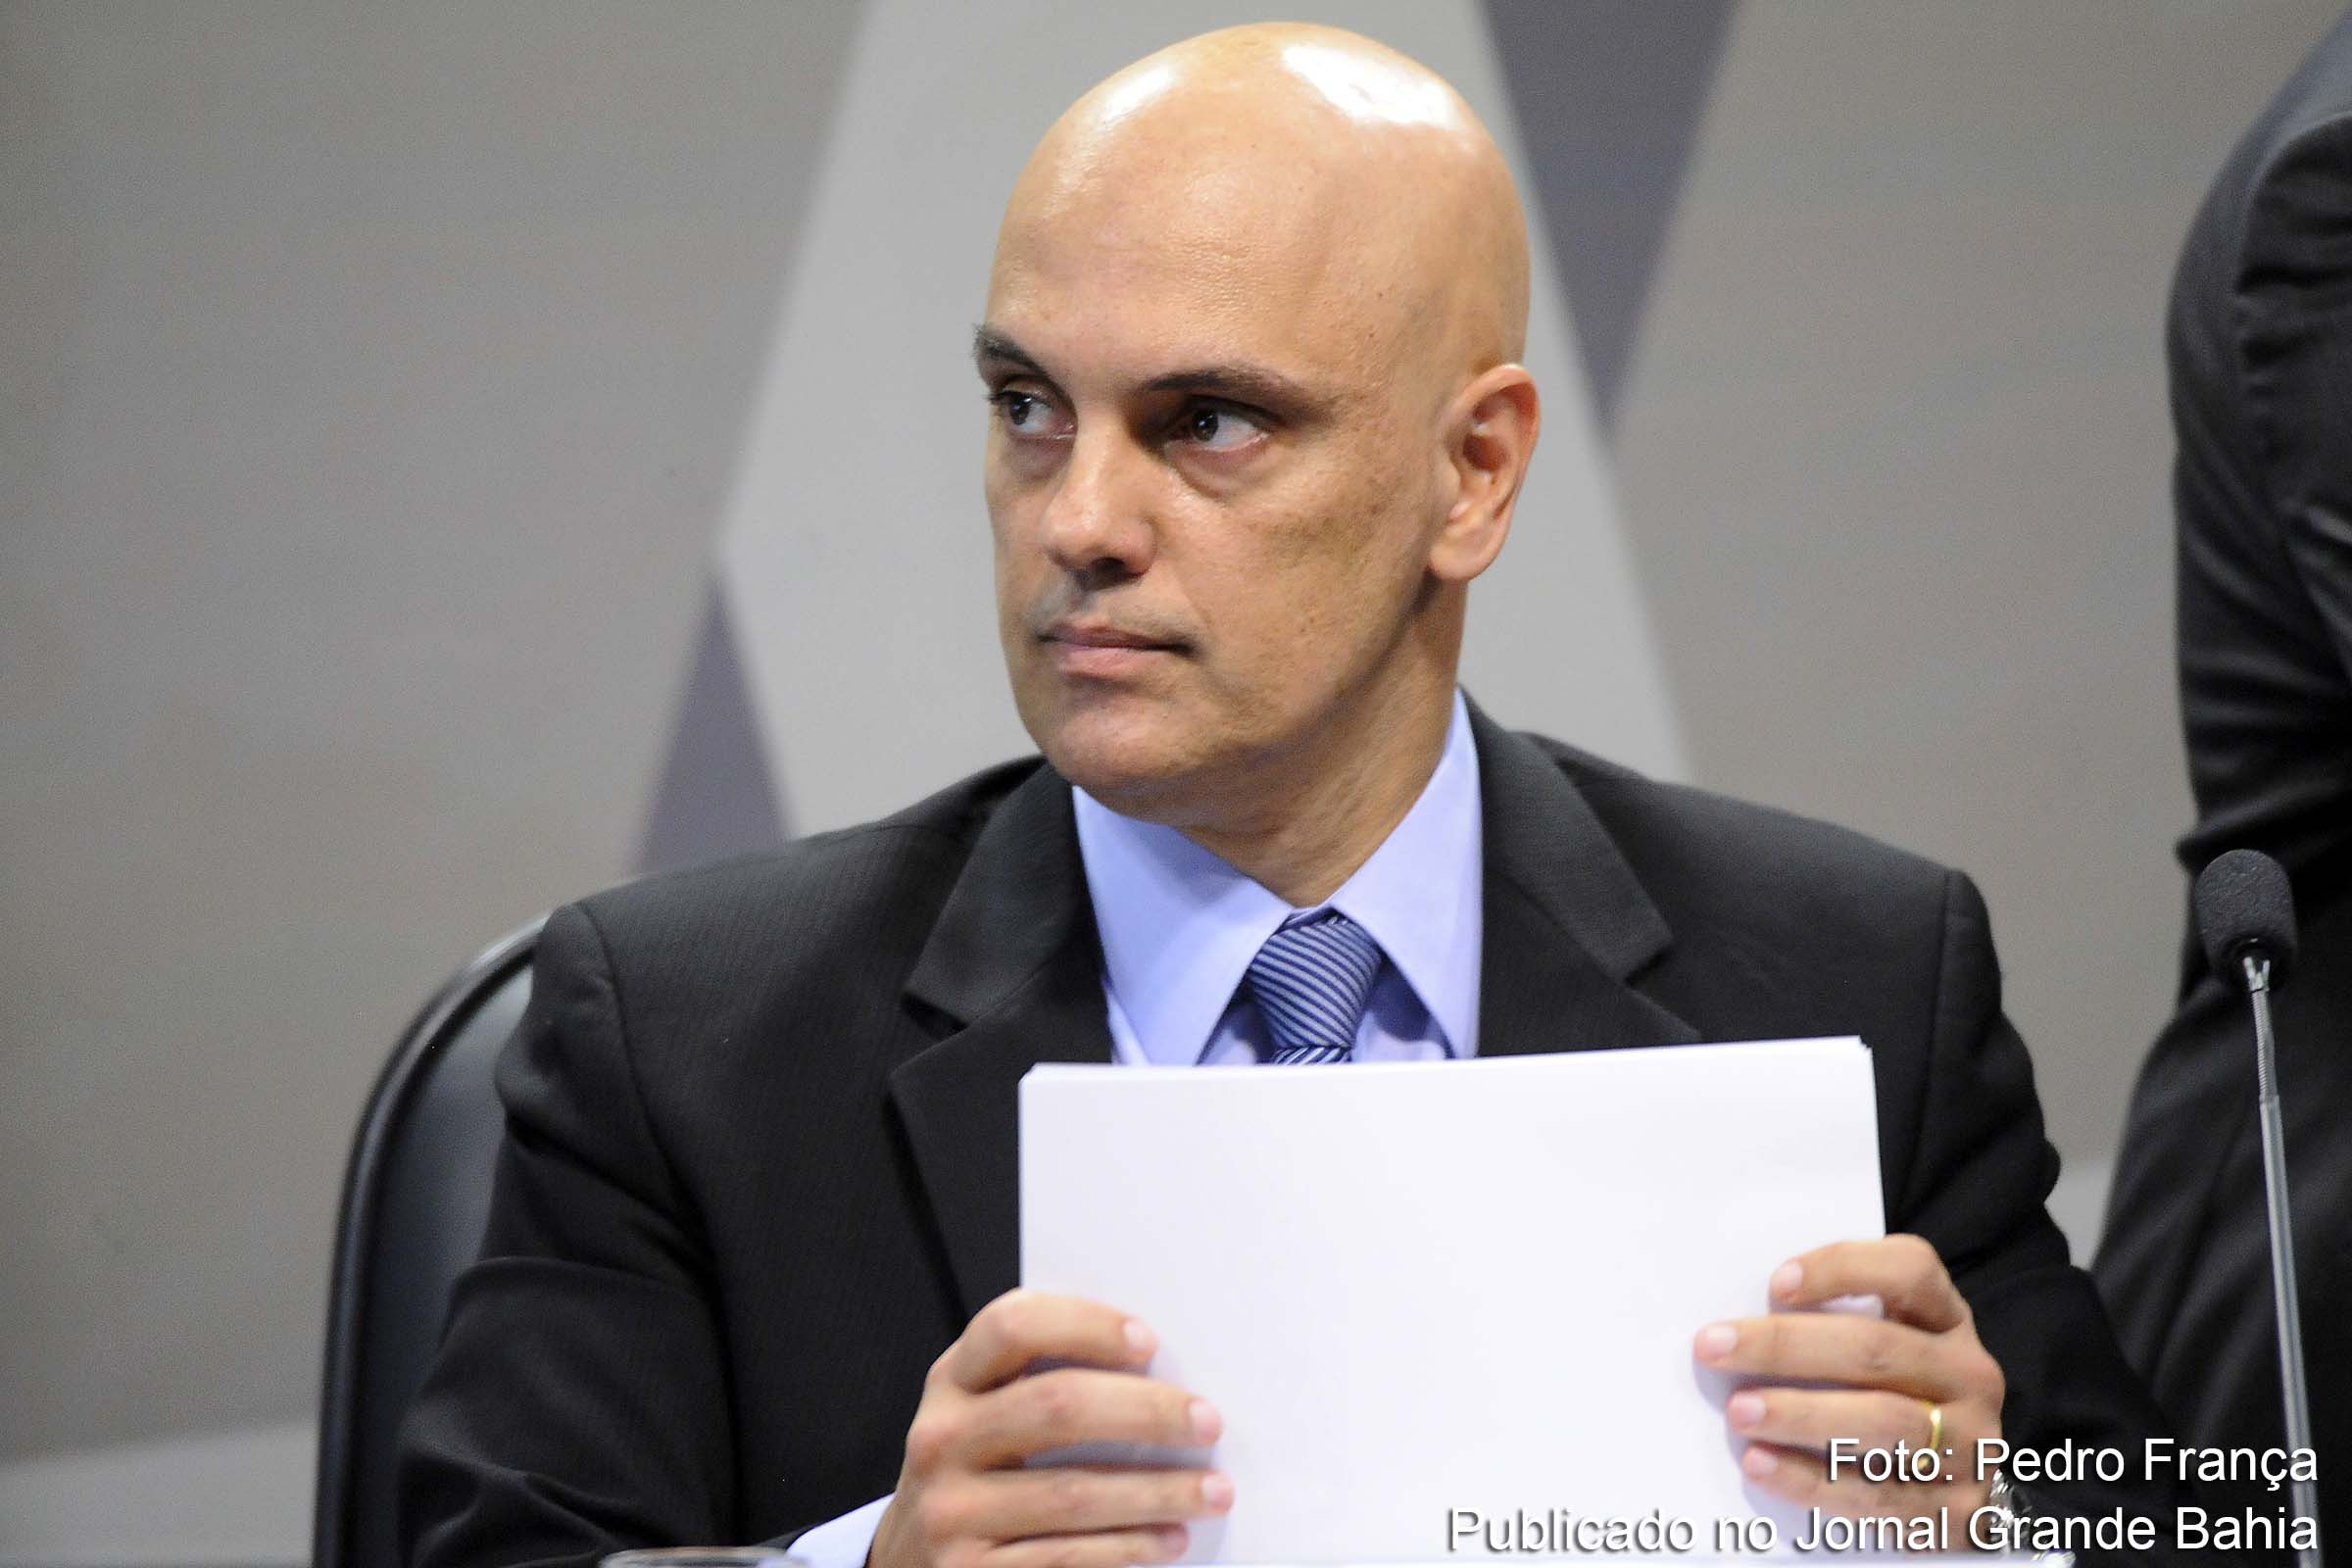 O jurista Alexandre de Moraes chega ao Supremo Tribunal Federal aos 49 anos.